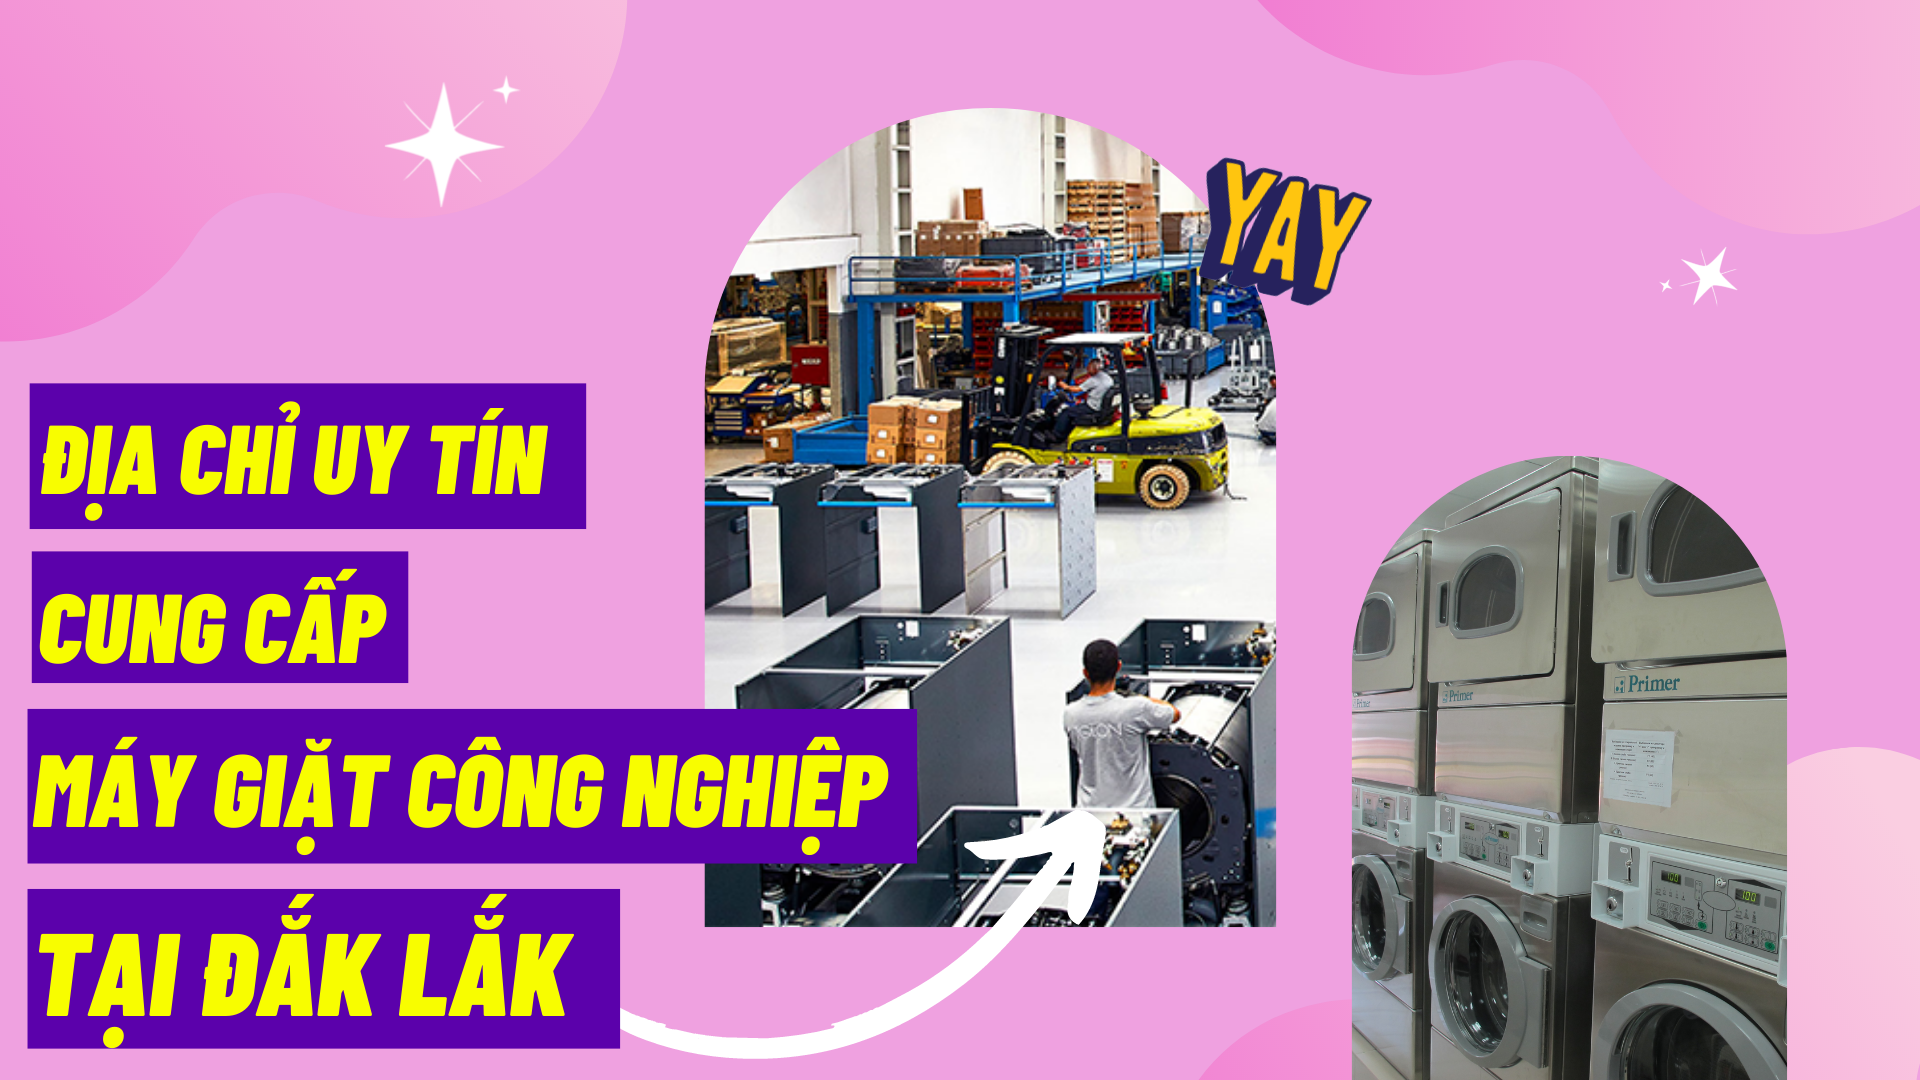 Địa chỉ uy tín cung cấp máy giặt công nghiệp tại Đắk Lắk